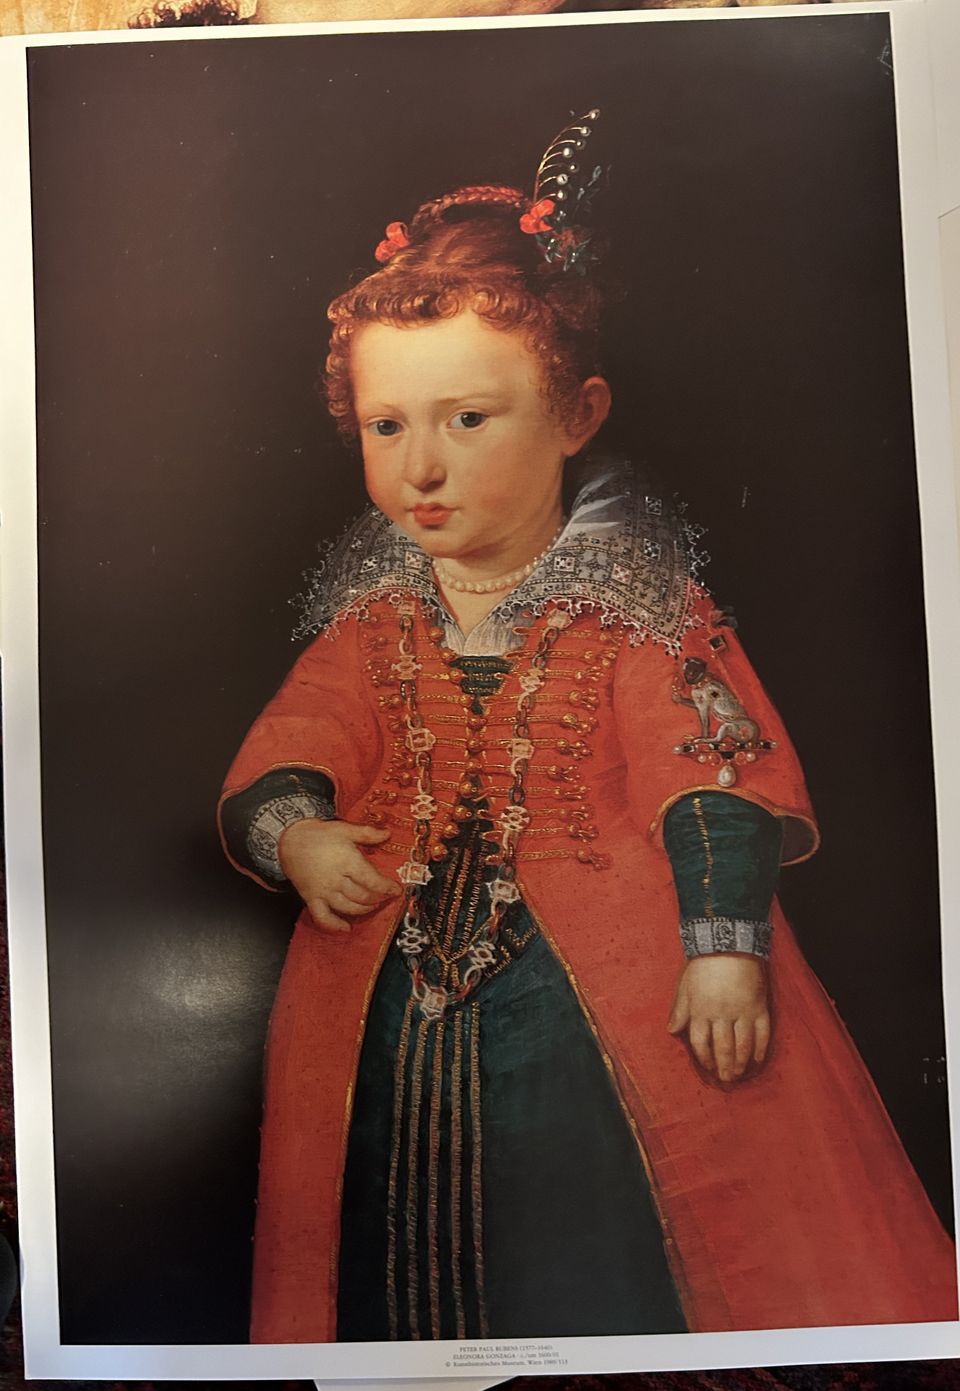 Taidejuliste Rubens (1577-1640): Eleonora Gonzaga (c.1600/01).